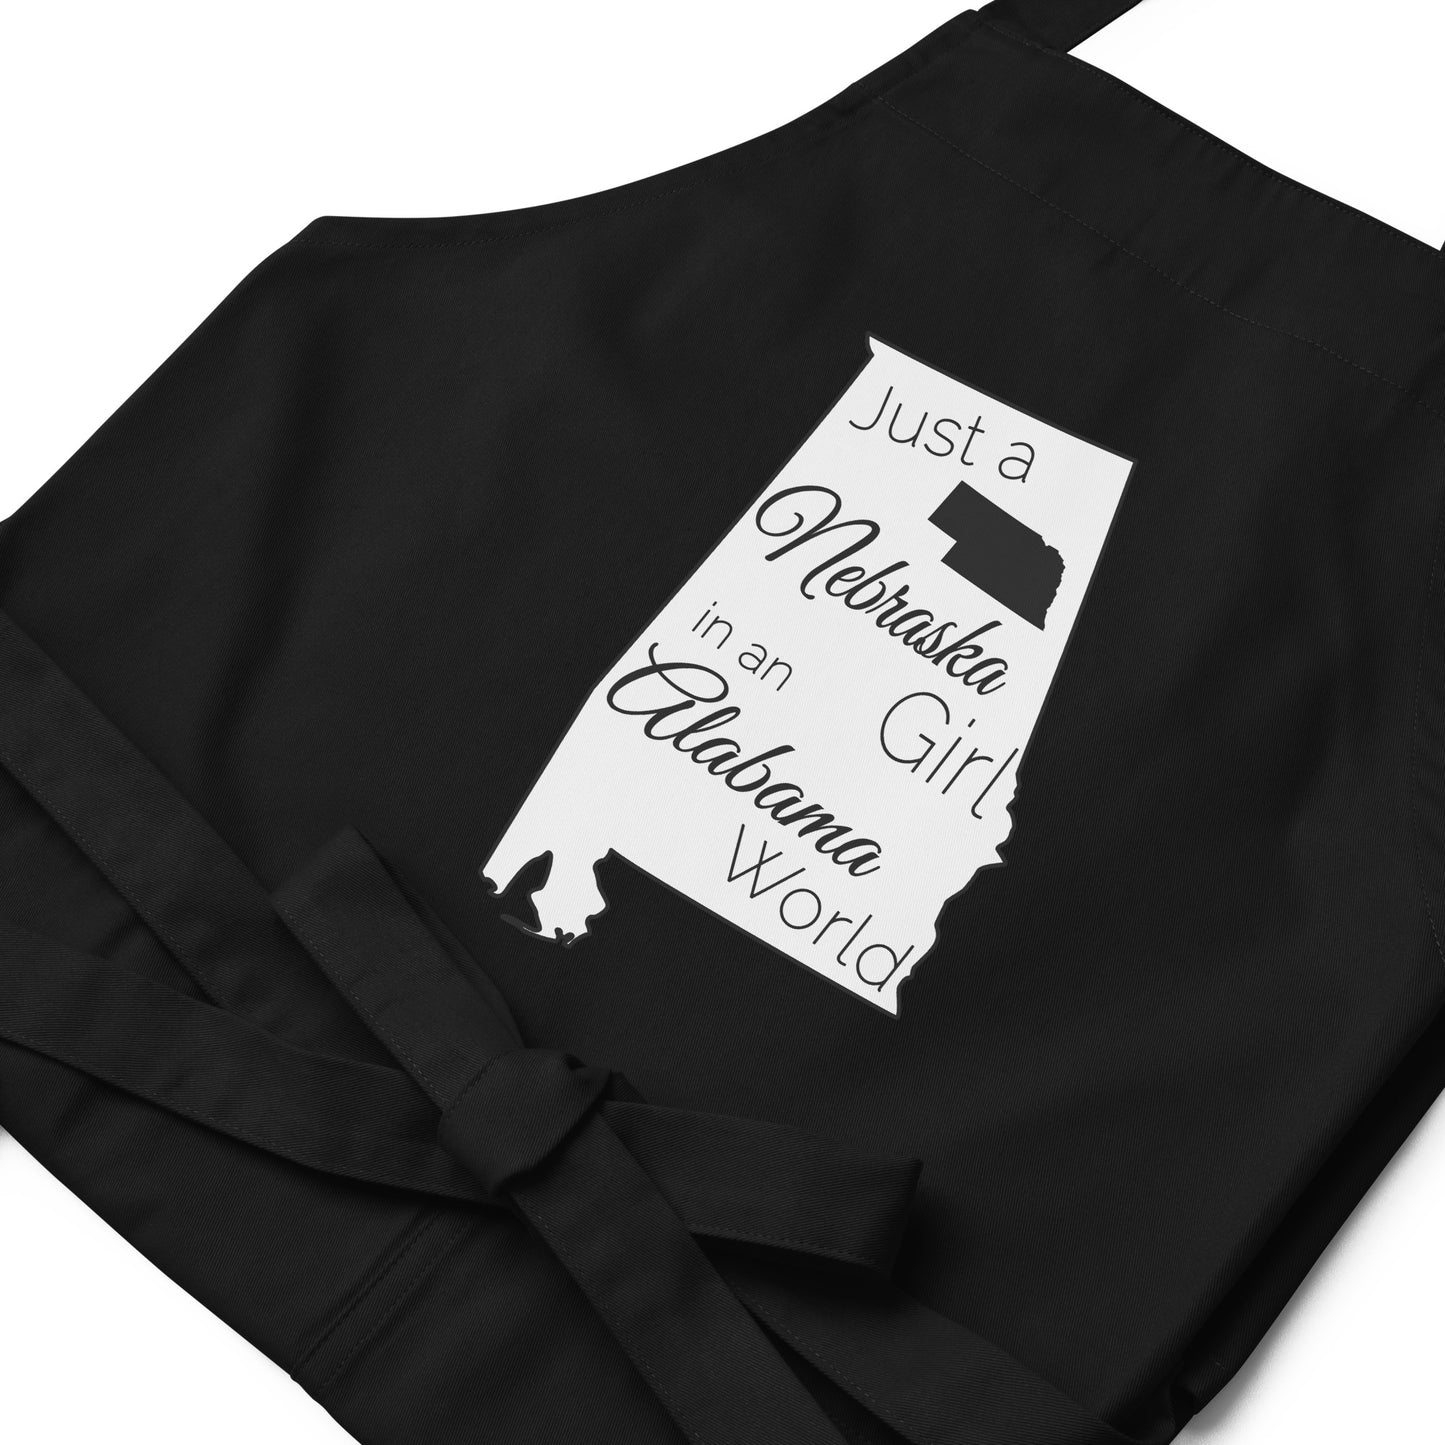 Just a Nebraska Girl in an Alabama World Organic cotton apron